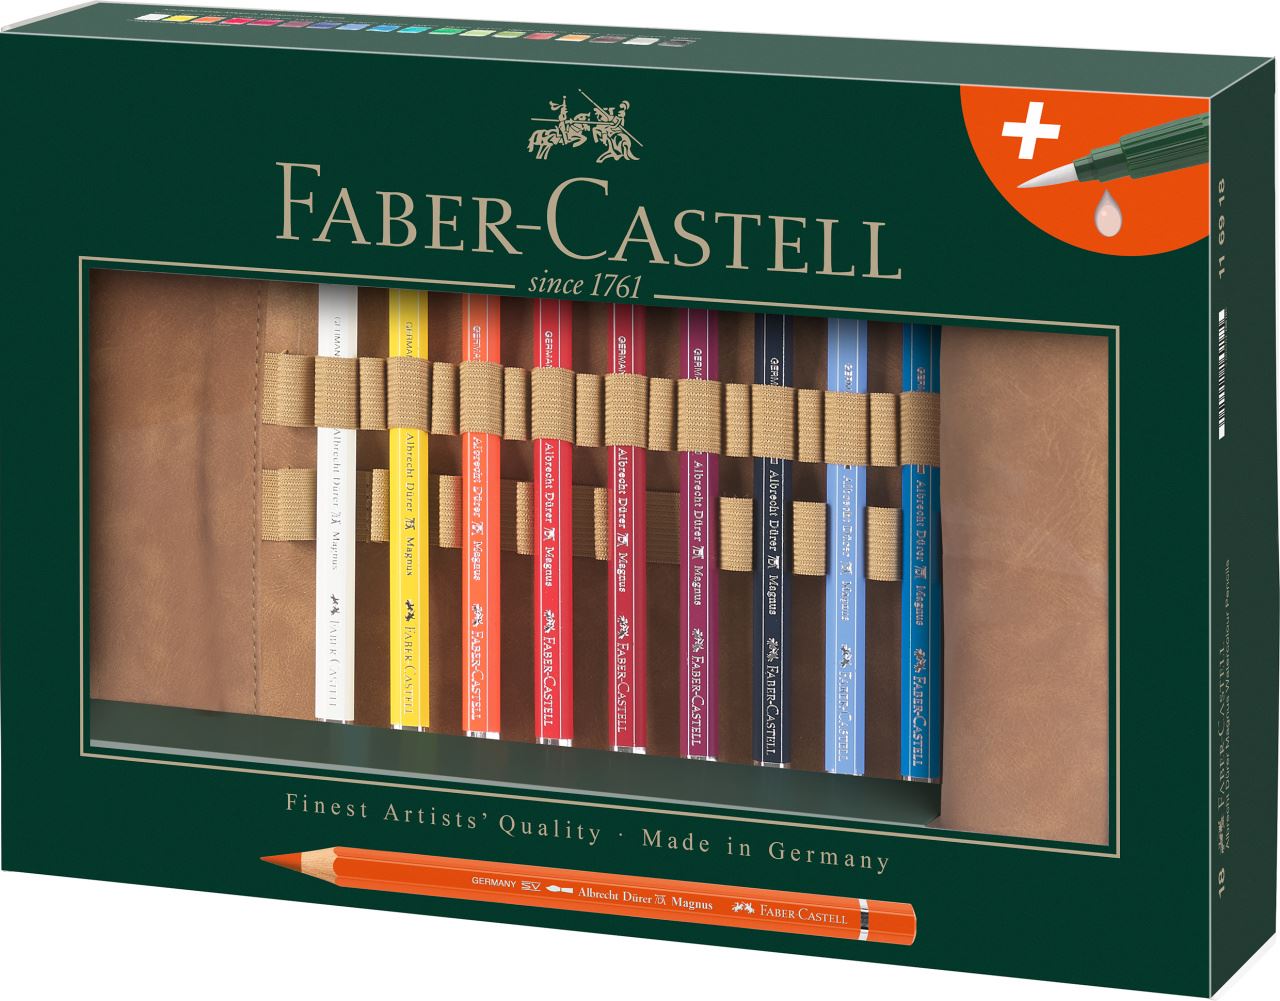 Faber-Castell - Υδατοδιαλυτή ξυλομπογιά Albrecht Dürer Magnus, pencil roll